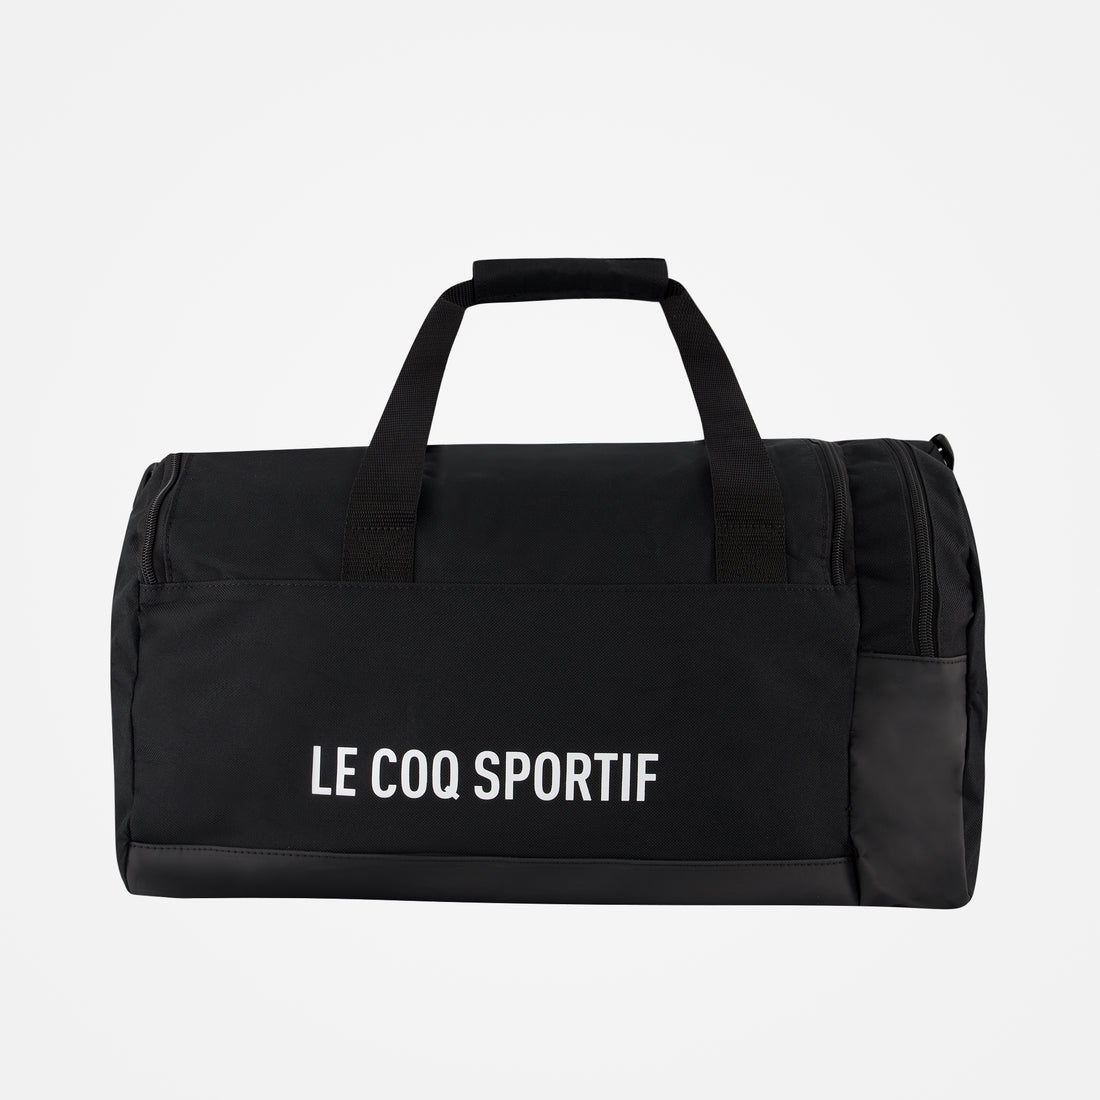 2020927-TRAINING Sportbag S/M black | Sac de sport